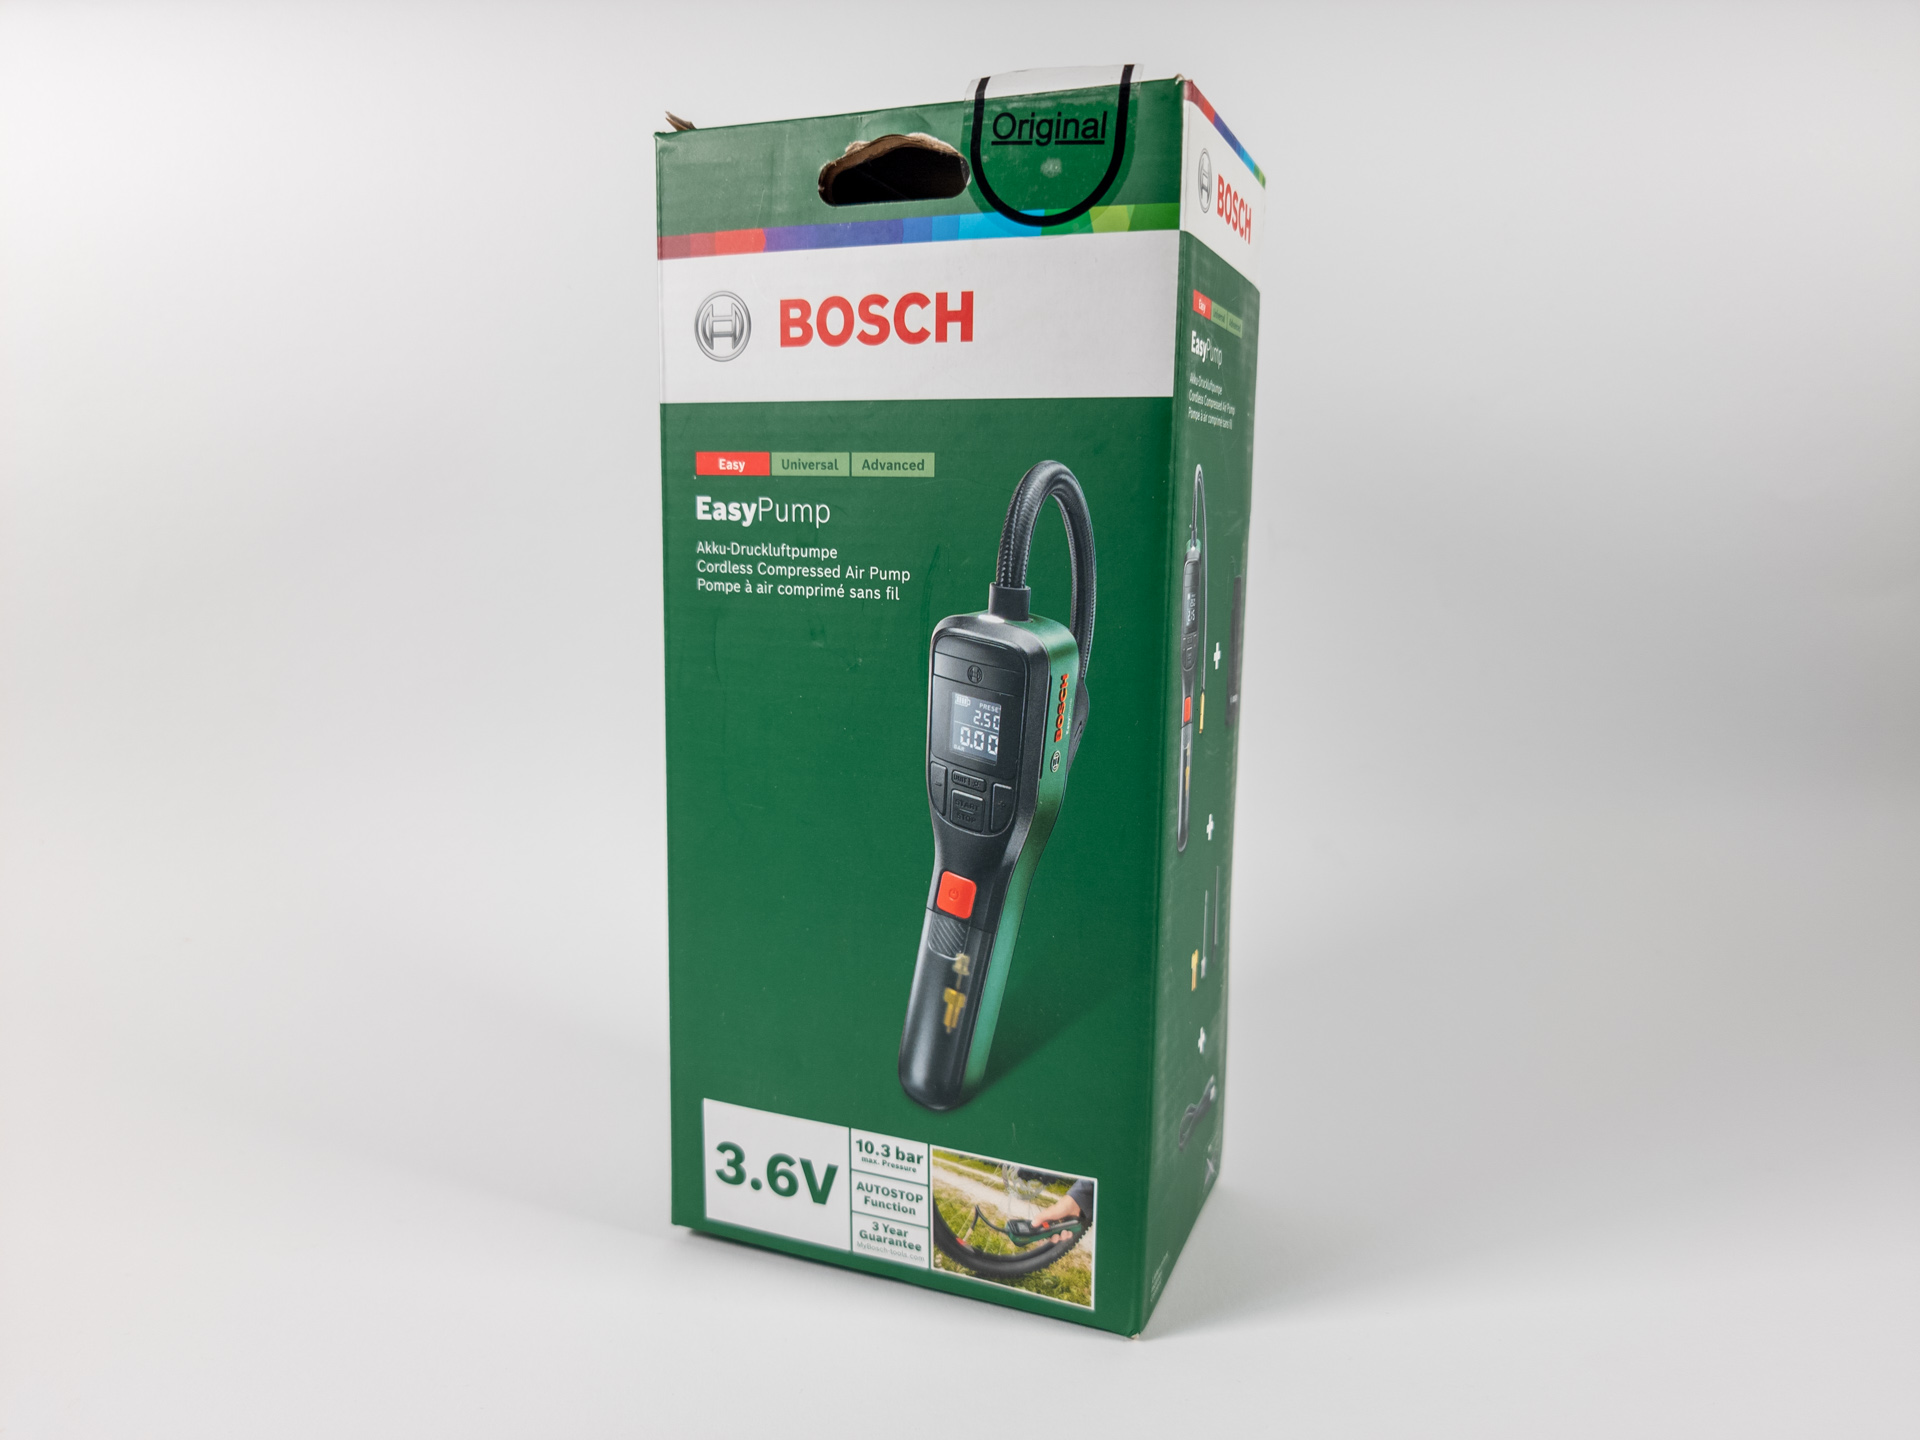 Bosch Easy Pump - Rund ums Haus im Test - sehr gut